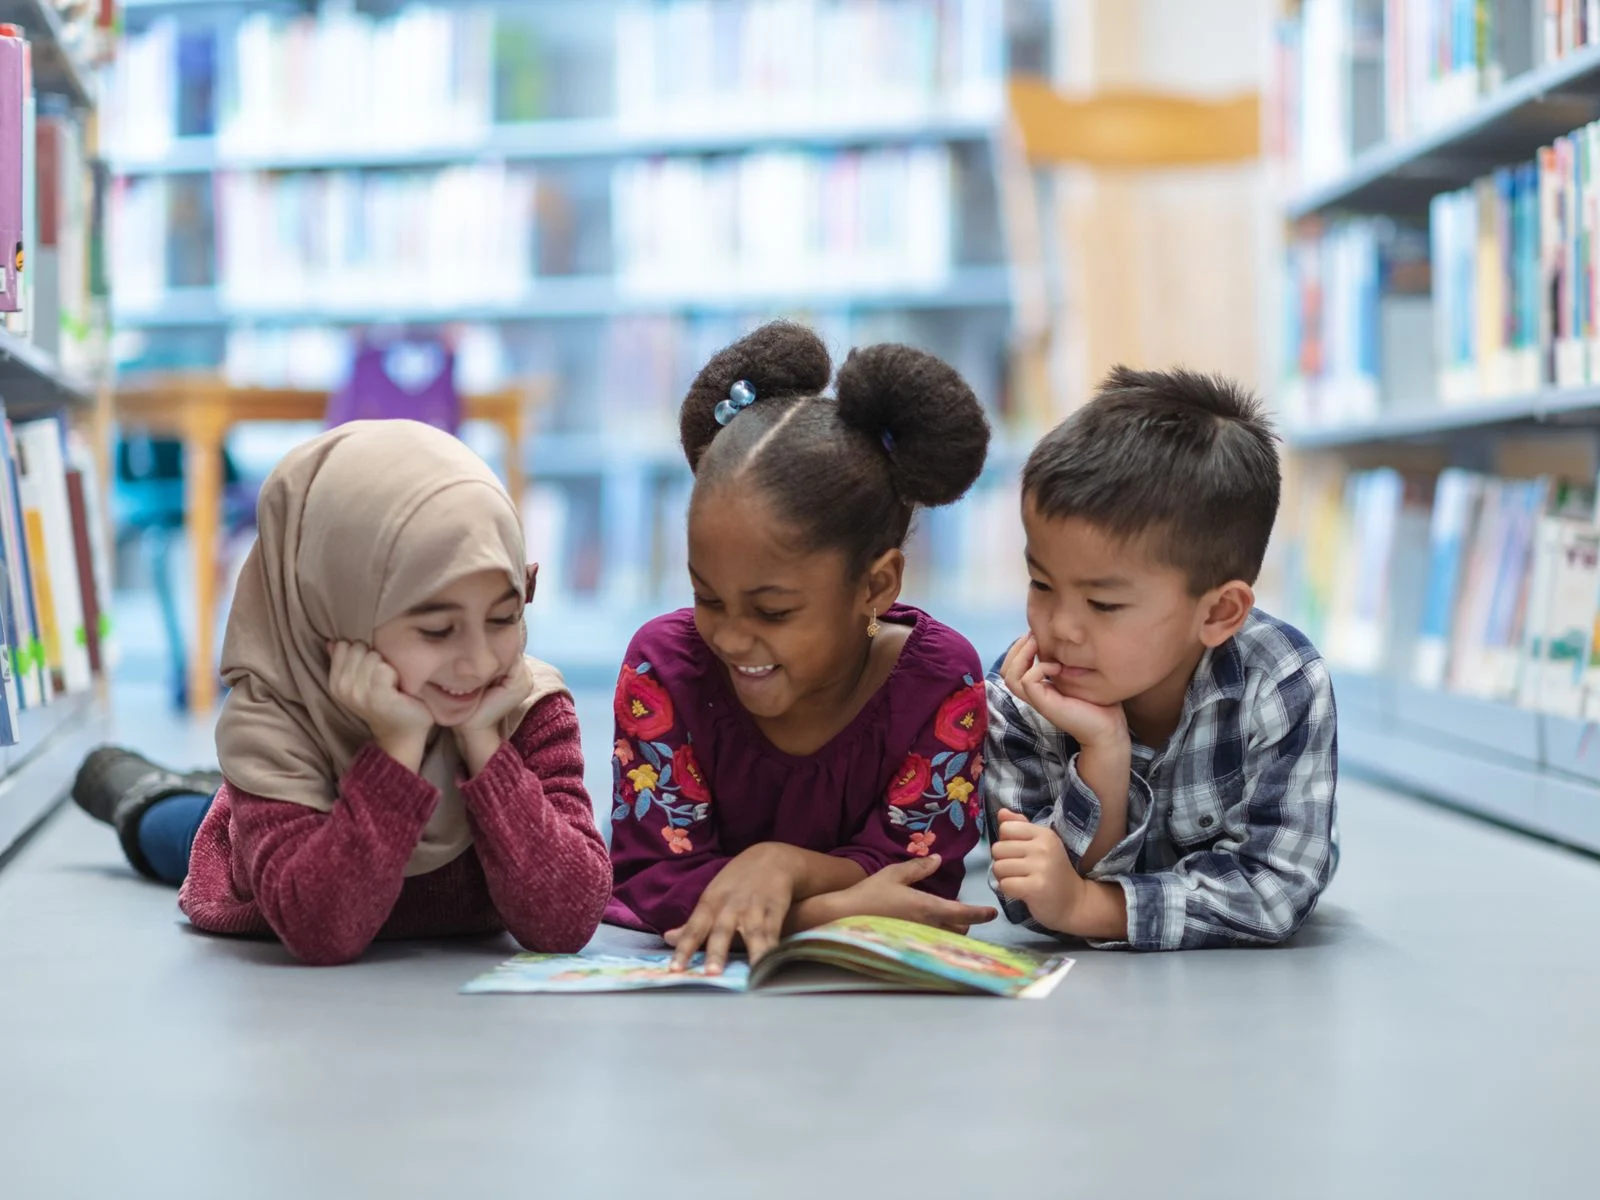 الزيارة الدورية للمكتبة من أساليب تنمية حب القراءة عند الطفل